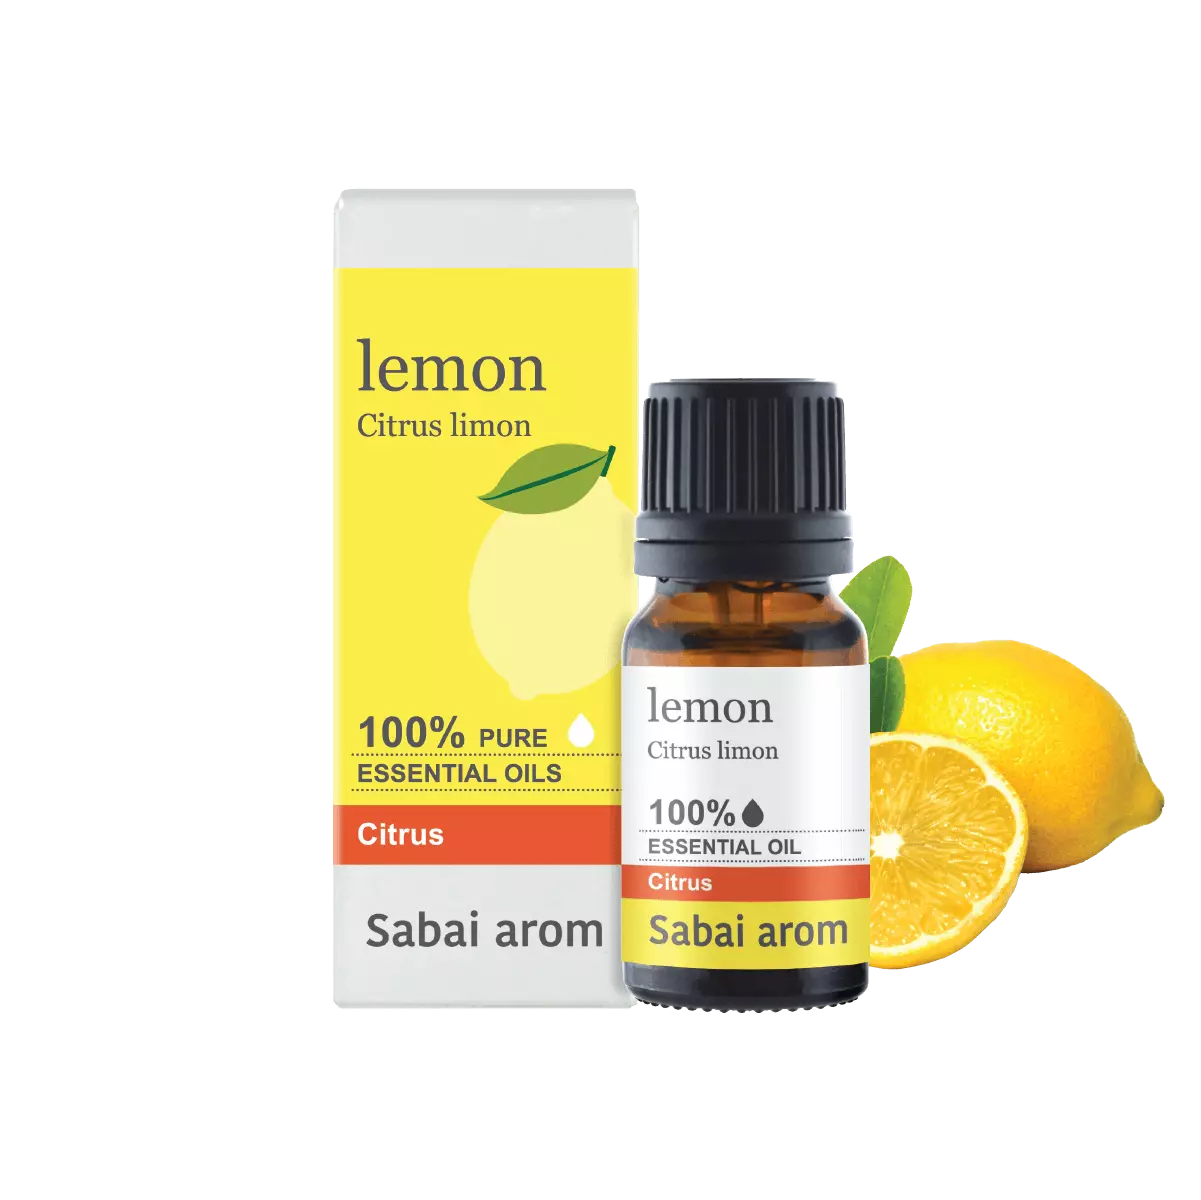 essential oil lemon <h2>100% Pure Essential Oil</h2> <em><strong>Citrus Limon</strong></em> <strong>Source : </strong>แอฟริกาใต้ น้ำมันหอมระเหยเลมอน (Lemon) มีคุณสมบัติพิเศษในการปลุกพลังบวกให้จิตใจที่หดหู่ ซึมเศร้า ให้ฟื้นตัวขึ้นมาฉับพลัน เหมือนมีแสงสว่างส่องขึ้นมากลางใจ ช่วยคลายอารมณ์ลบ คลายความวิตกกังวล ท้อแท้ สับสนให้เบาบางลง ให้สมองปลอดโปร่ง ตื่นตัว มีสมาธิ ช่วยให้คนที่มีปัญหาด้านการเรียนรู้ช้า ได้จดจ่อและค่อยๆพัฒนาศักยภาพไปตามลำดับอย่างมีประสิทธิภาพ <strong>Scent : </strong>Fresh, strong lemony like Lemon peels <strong>Family : </strong>กลิ่นพืชตระกูลส้ม <strong>Note : </strong>Top